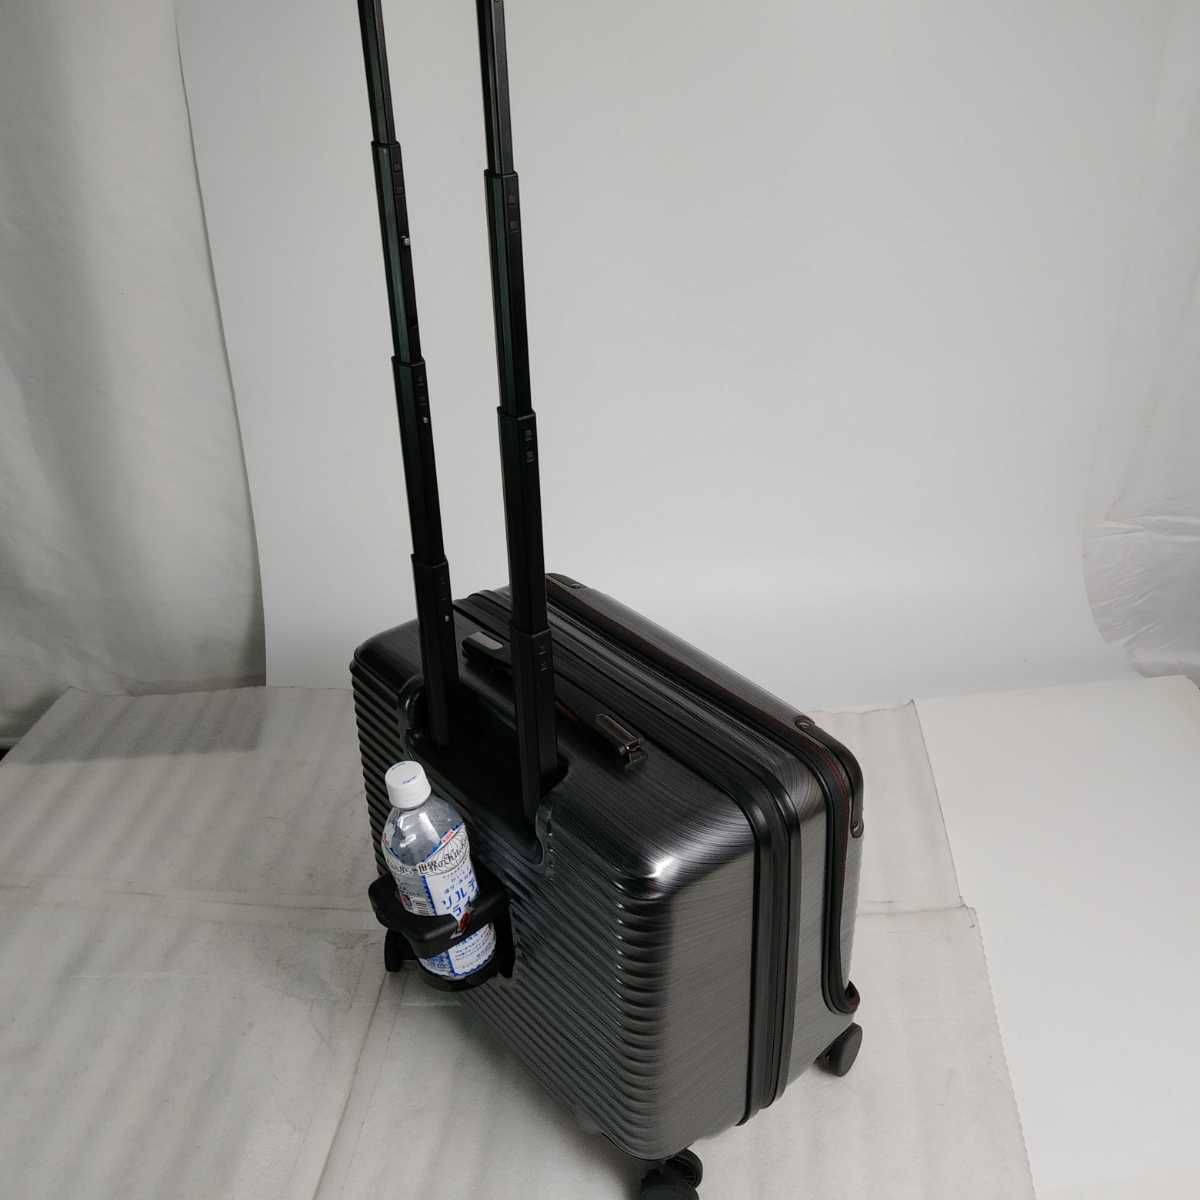 ス68 Sサイズ 横型 フロントオープン スーツケース 機内持ち込み 止水ファスナー USB カップホルダー スクラッチガンメタの画像4